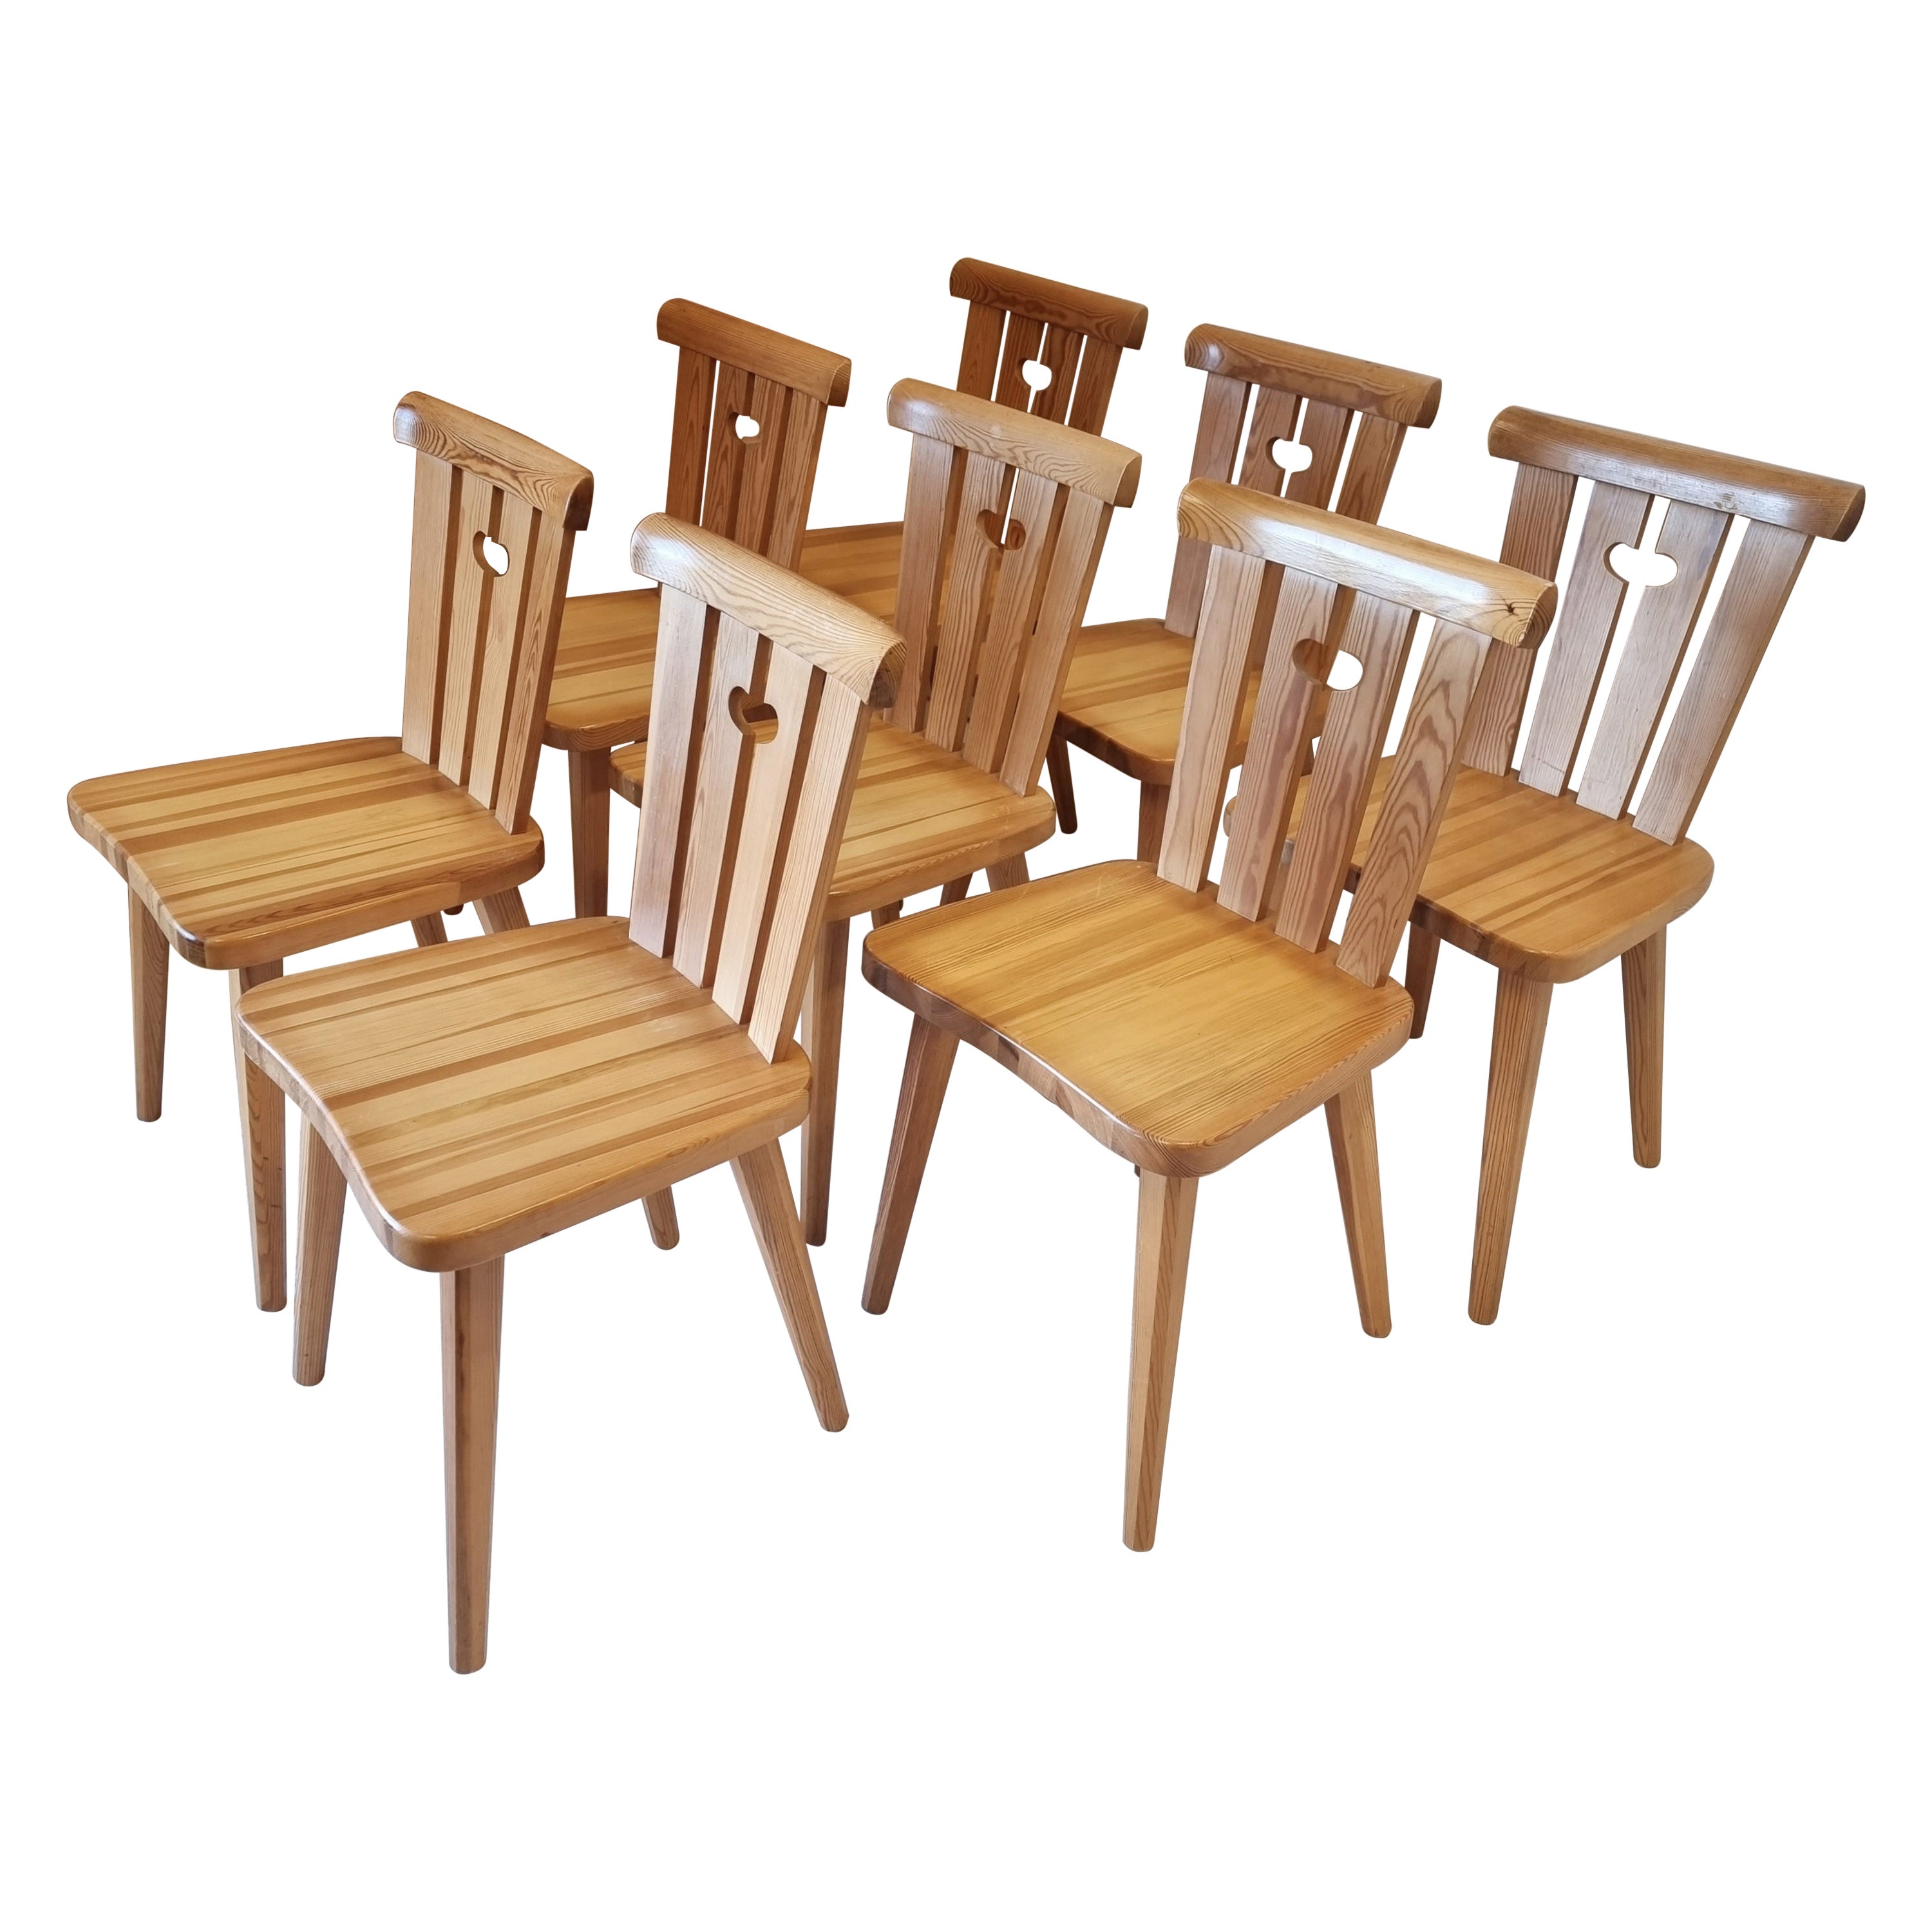 Göran Malmvall, Set '8' with Pine Chairs, Sportstugemöbler / Scandinavian Modern